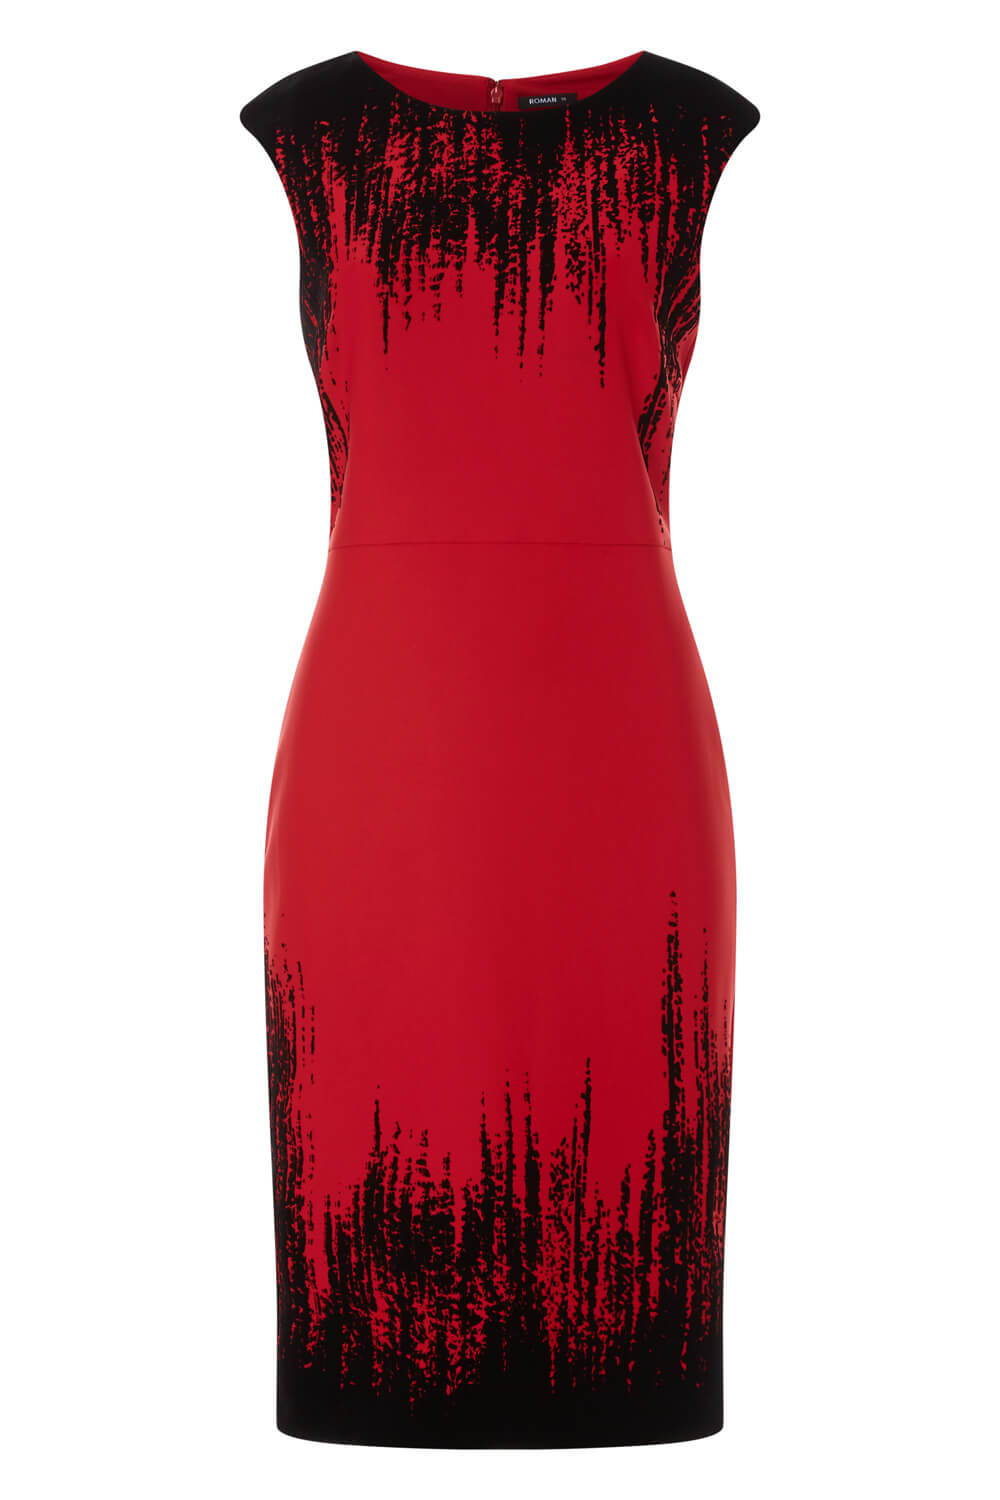 Red Flocking Detail Dress, Image 4 of 4